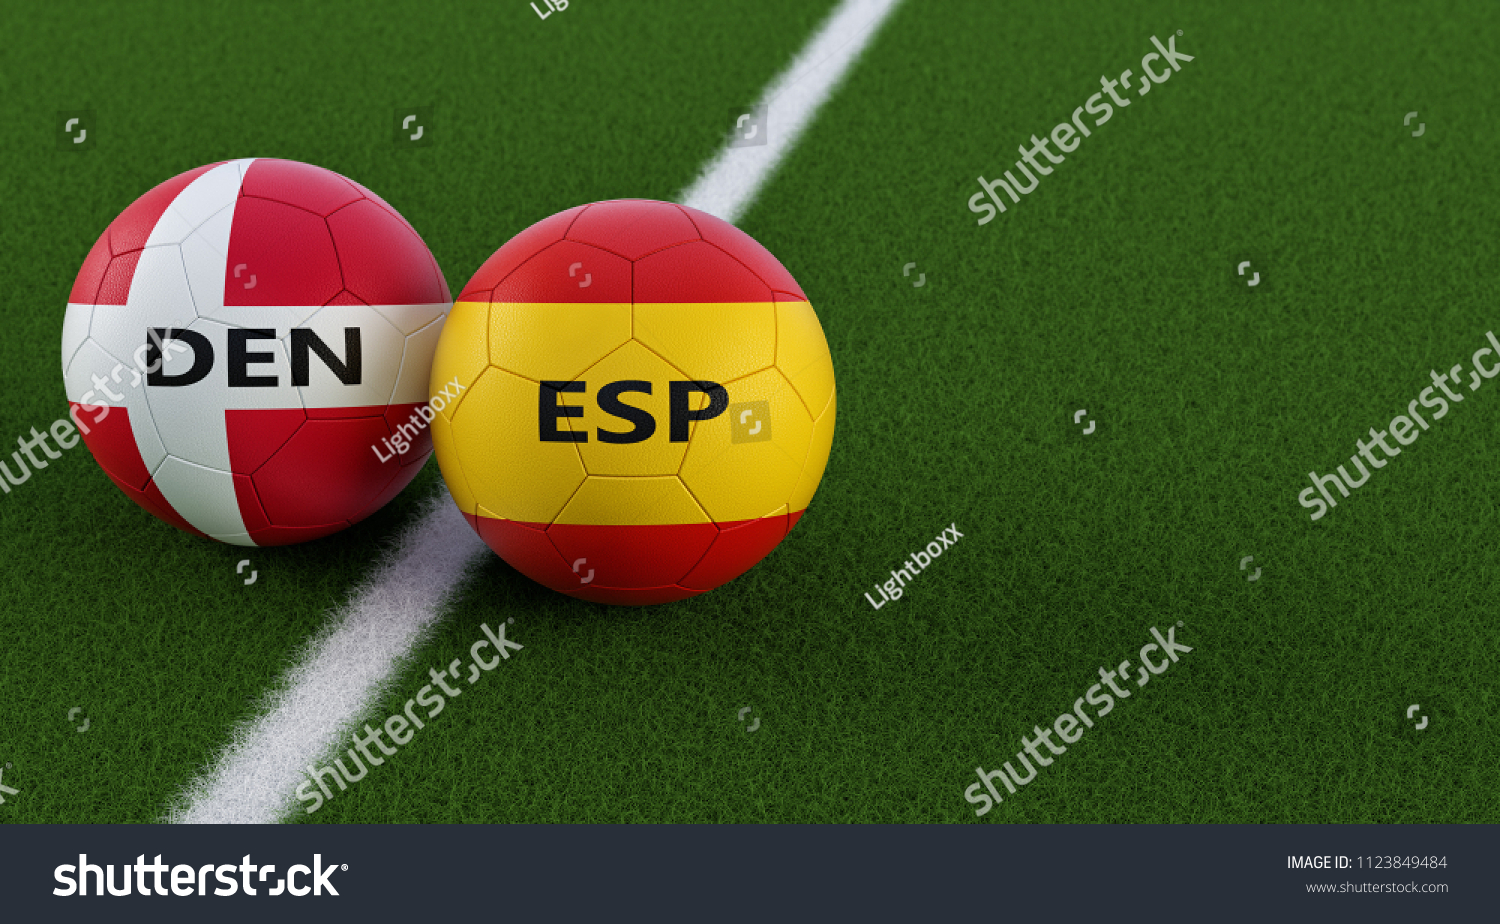 Spain denmark vs Euro 2020: